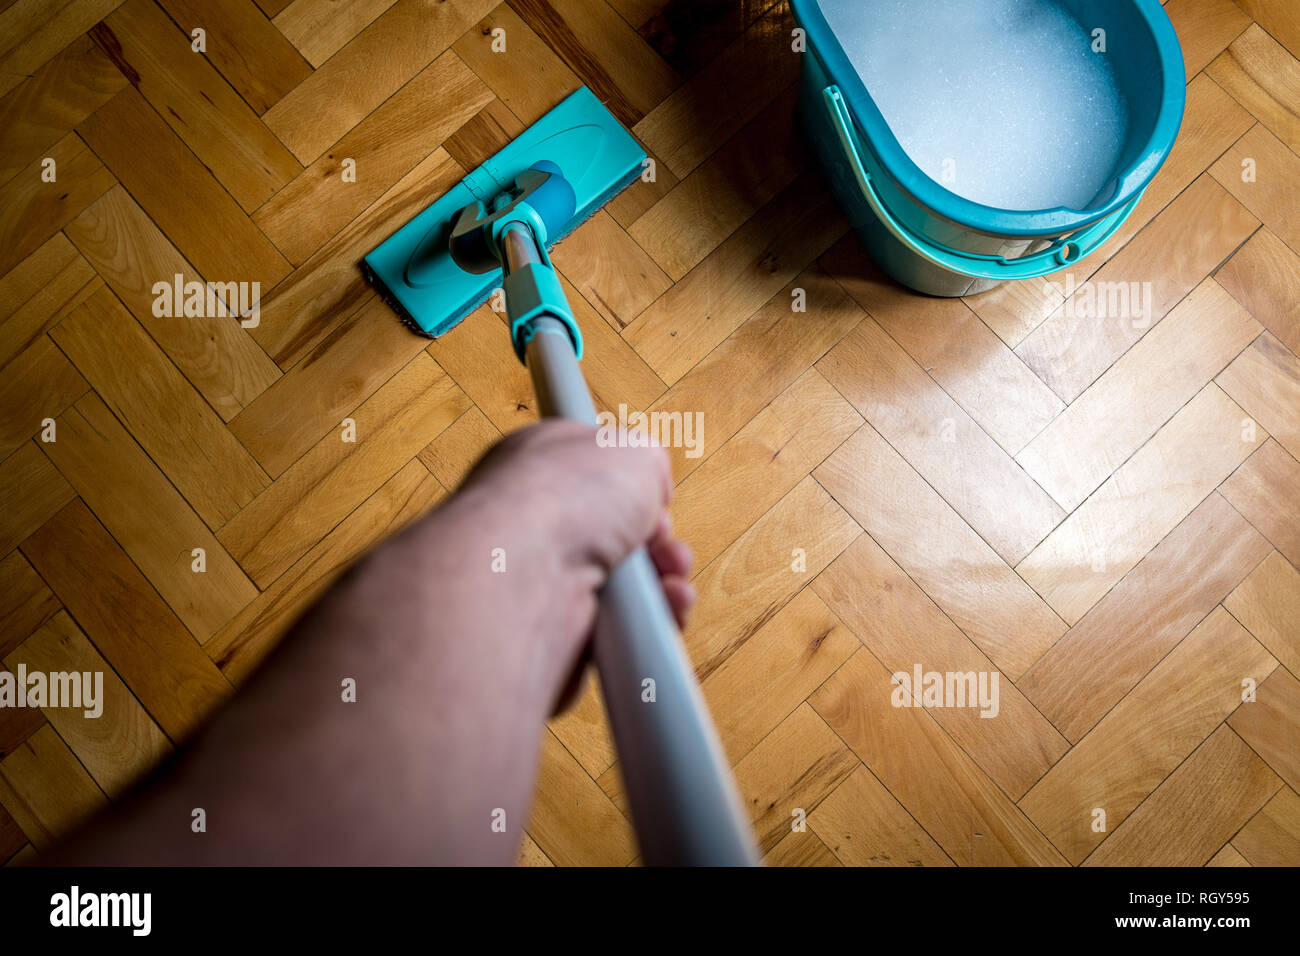 Tergi sporco pavimento in legno da bagnato tergivetro mop, i lavori di casa. L'uomo la pulizia della casa. Topview Foto Stock